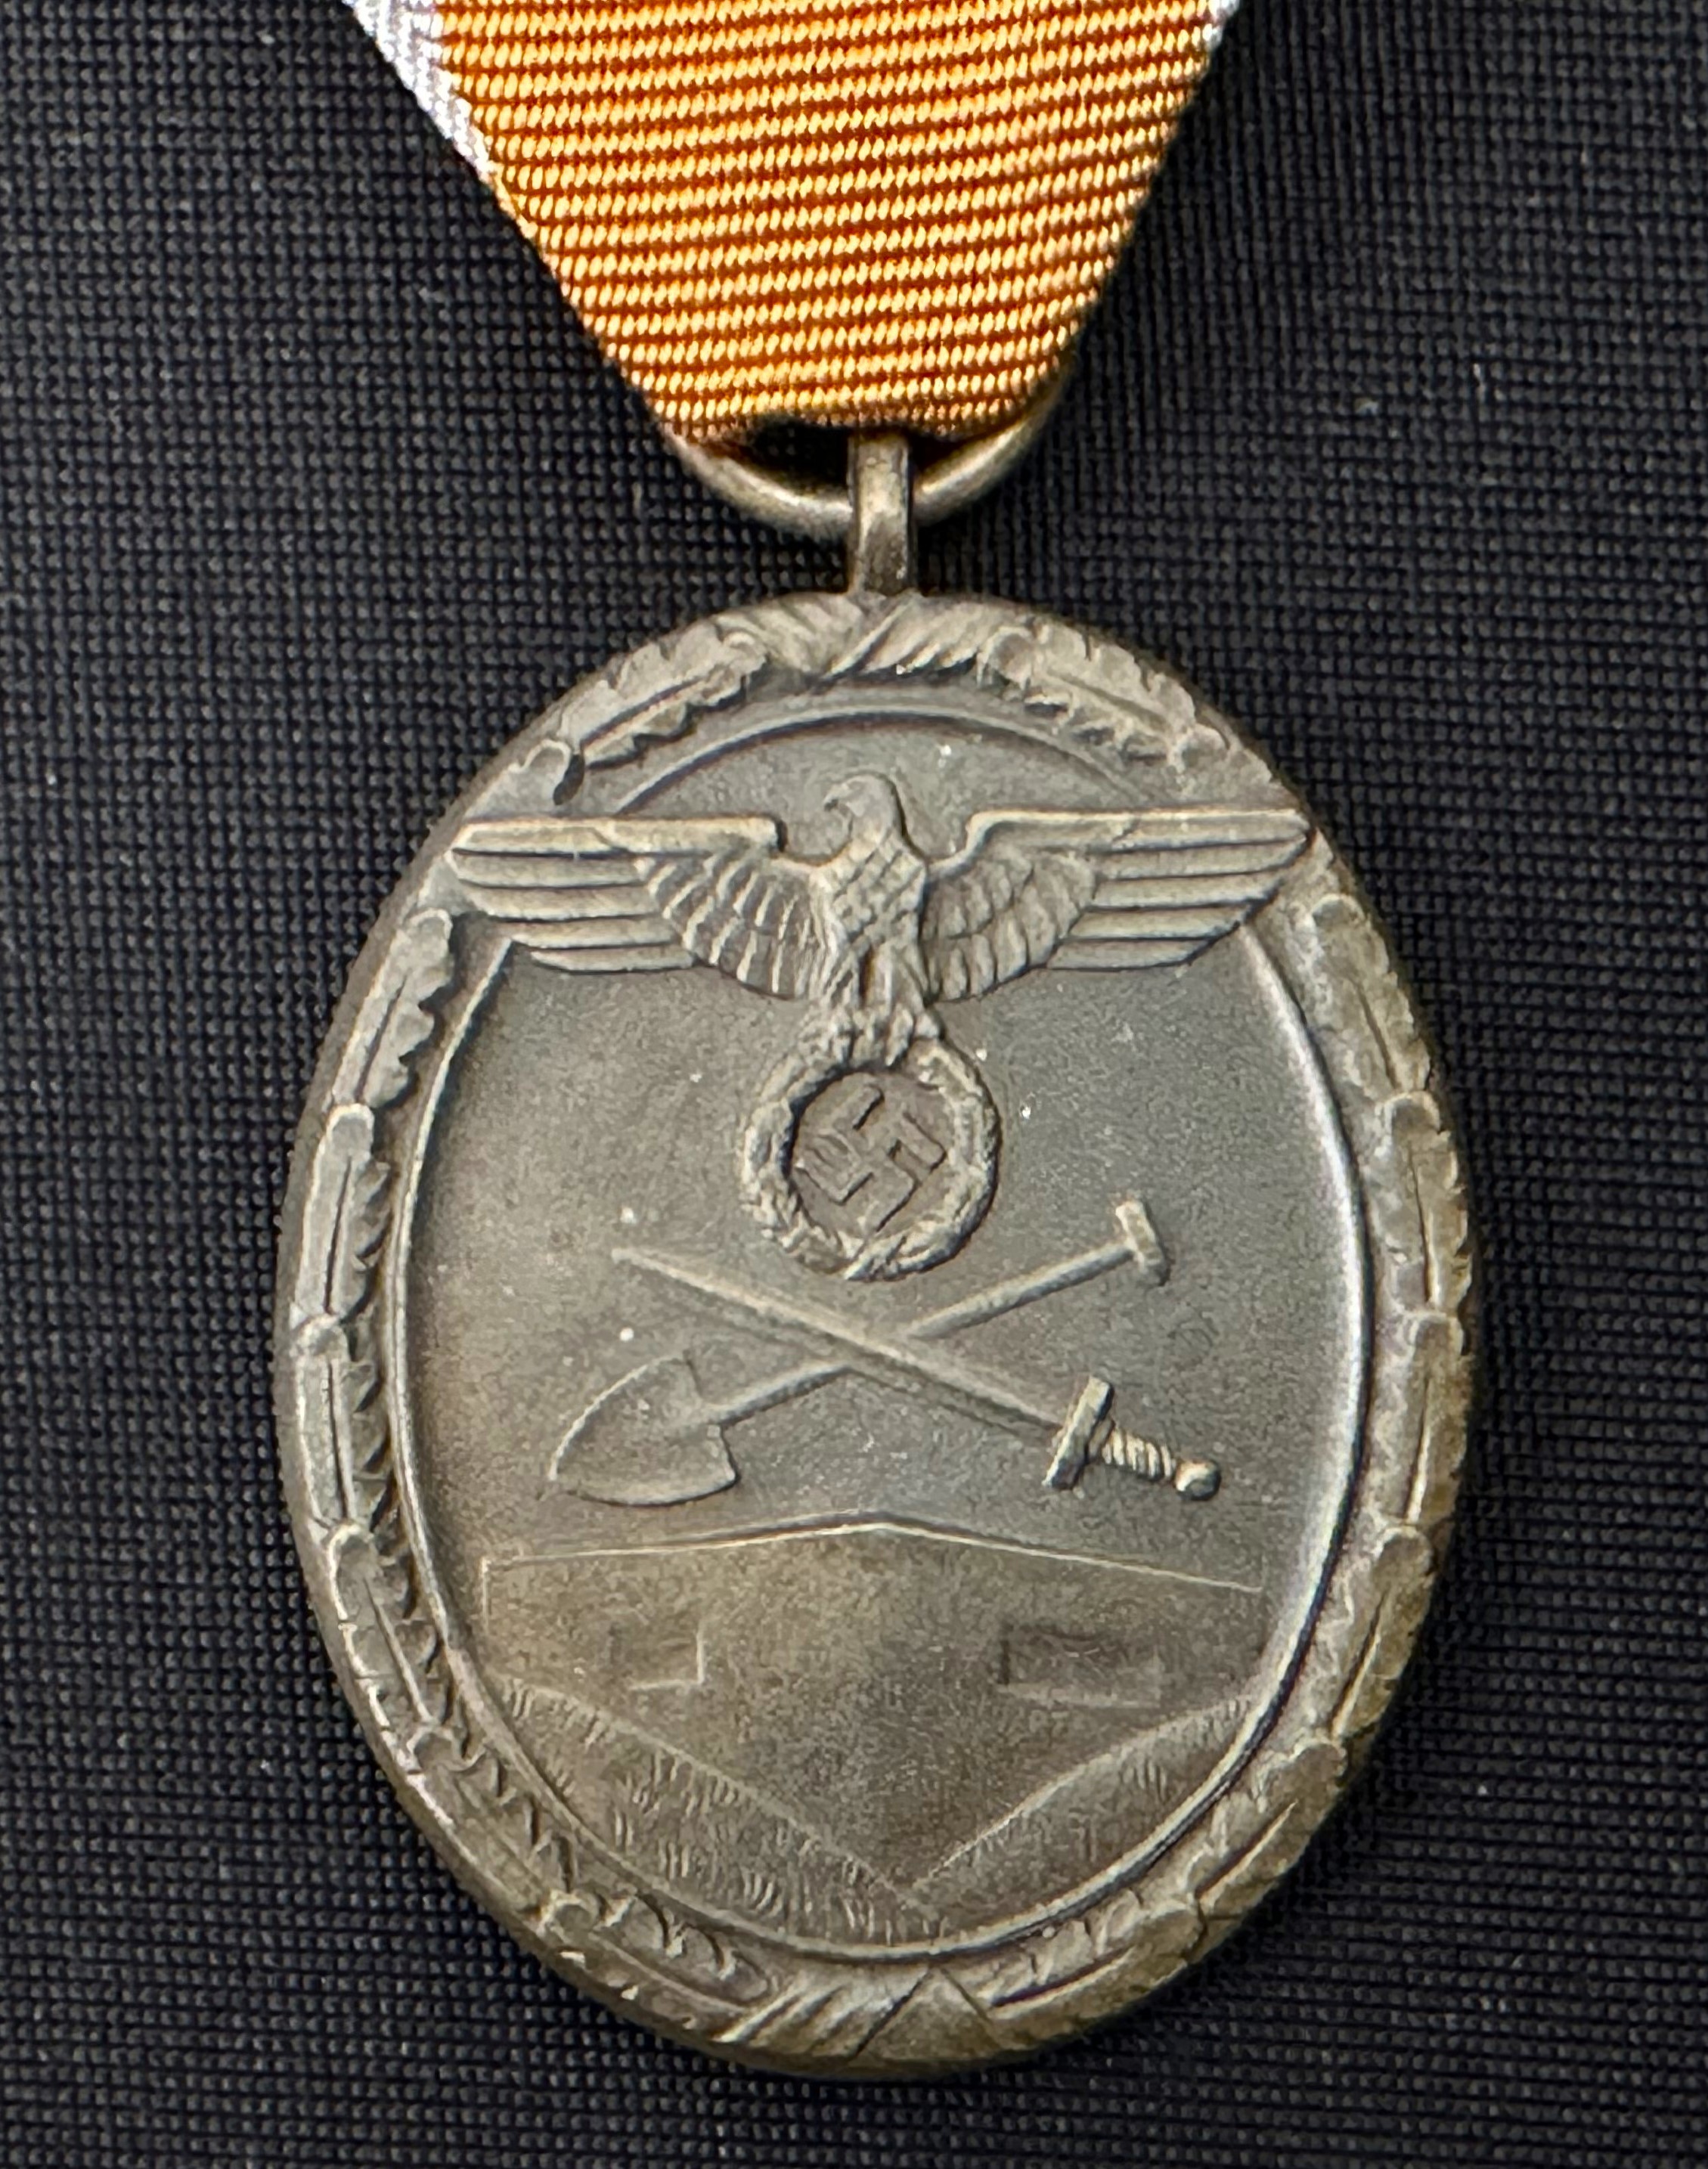 WW2 Third Reich Deutsches Schutzwall-Ehrenzeichen - West Wall Medal. Complete with ribbon and in - Image 4 of 4